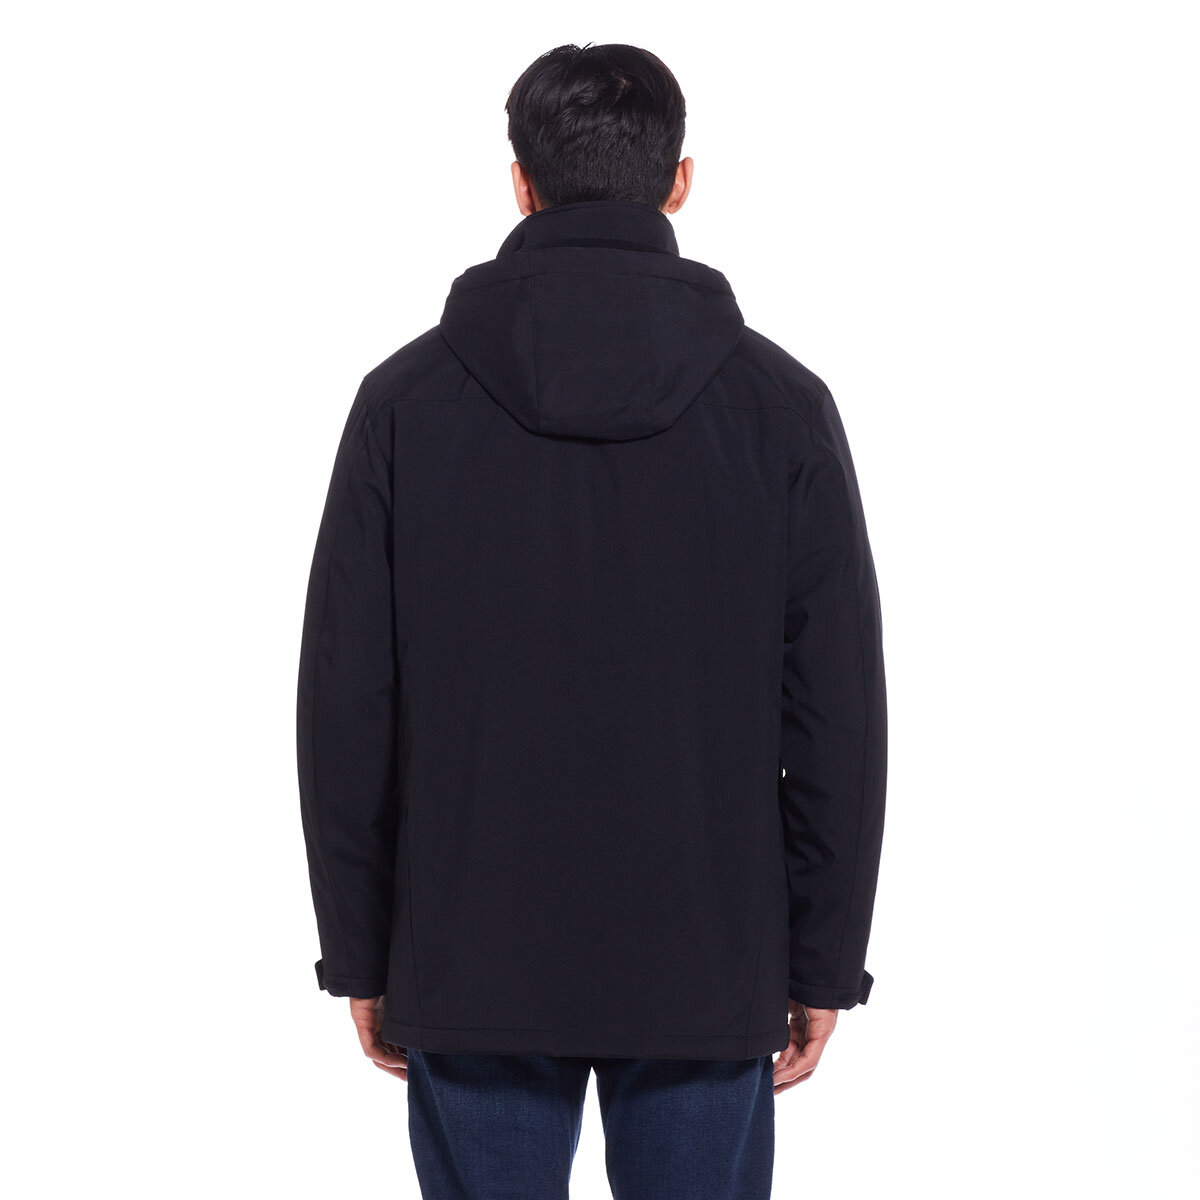 Weatherproof Men's Ultra Tech Flextech Jacket in Black